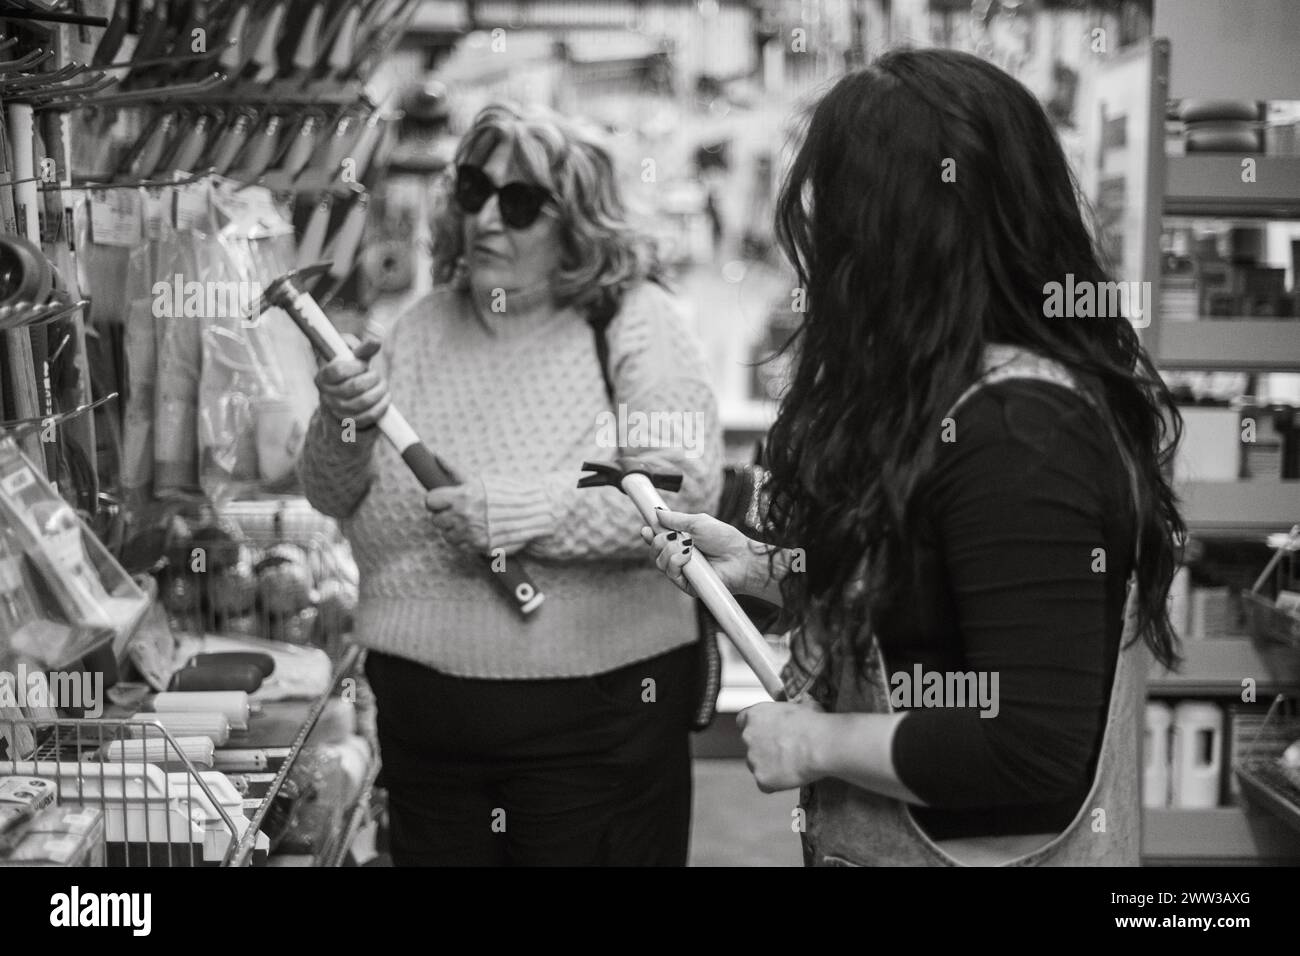 Immagine monocromatica di due donne che interagiscono su una selezione di strumenti in un negozio di hardware Foto Stock